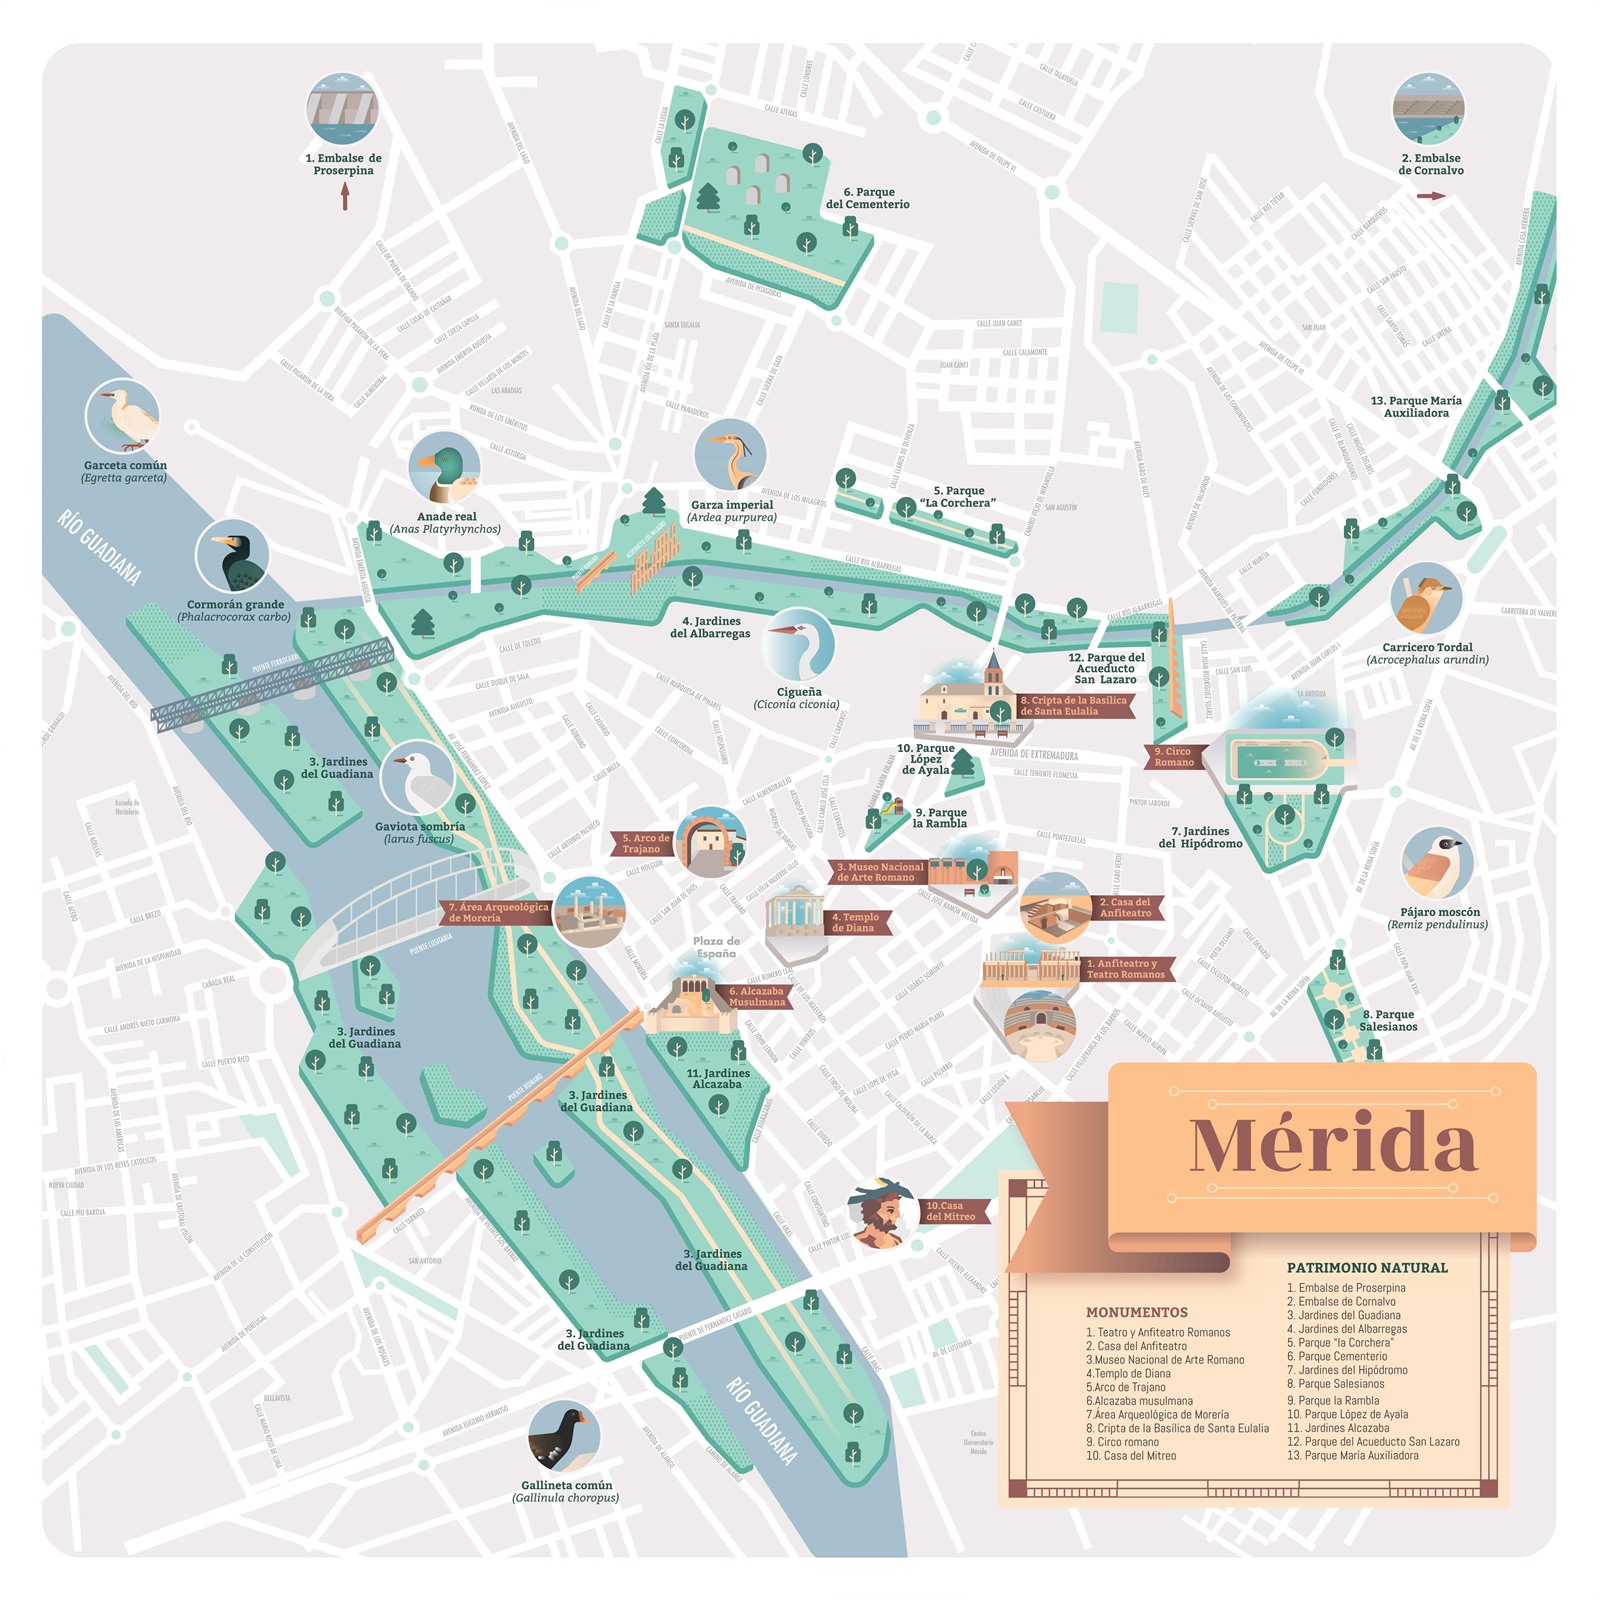 Presentado el nuevo mapa guía del Patrimonio Natural de Mérida editado por el Grupo de Ciudades Patrimonio